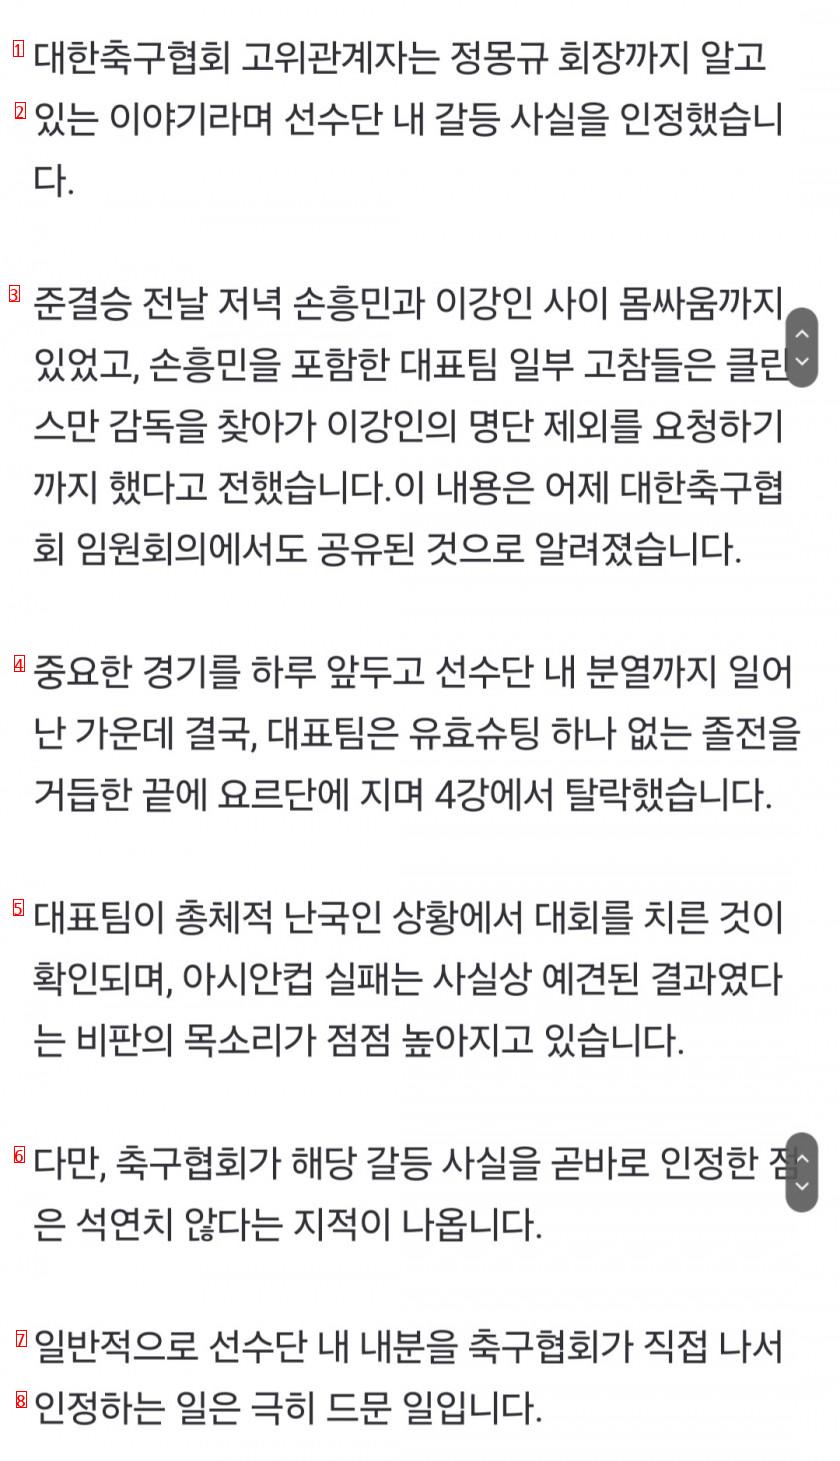 축구협회 """"손흥민이 이강인 명단 제외까지 요청""""